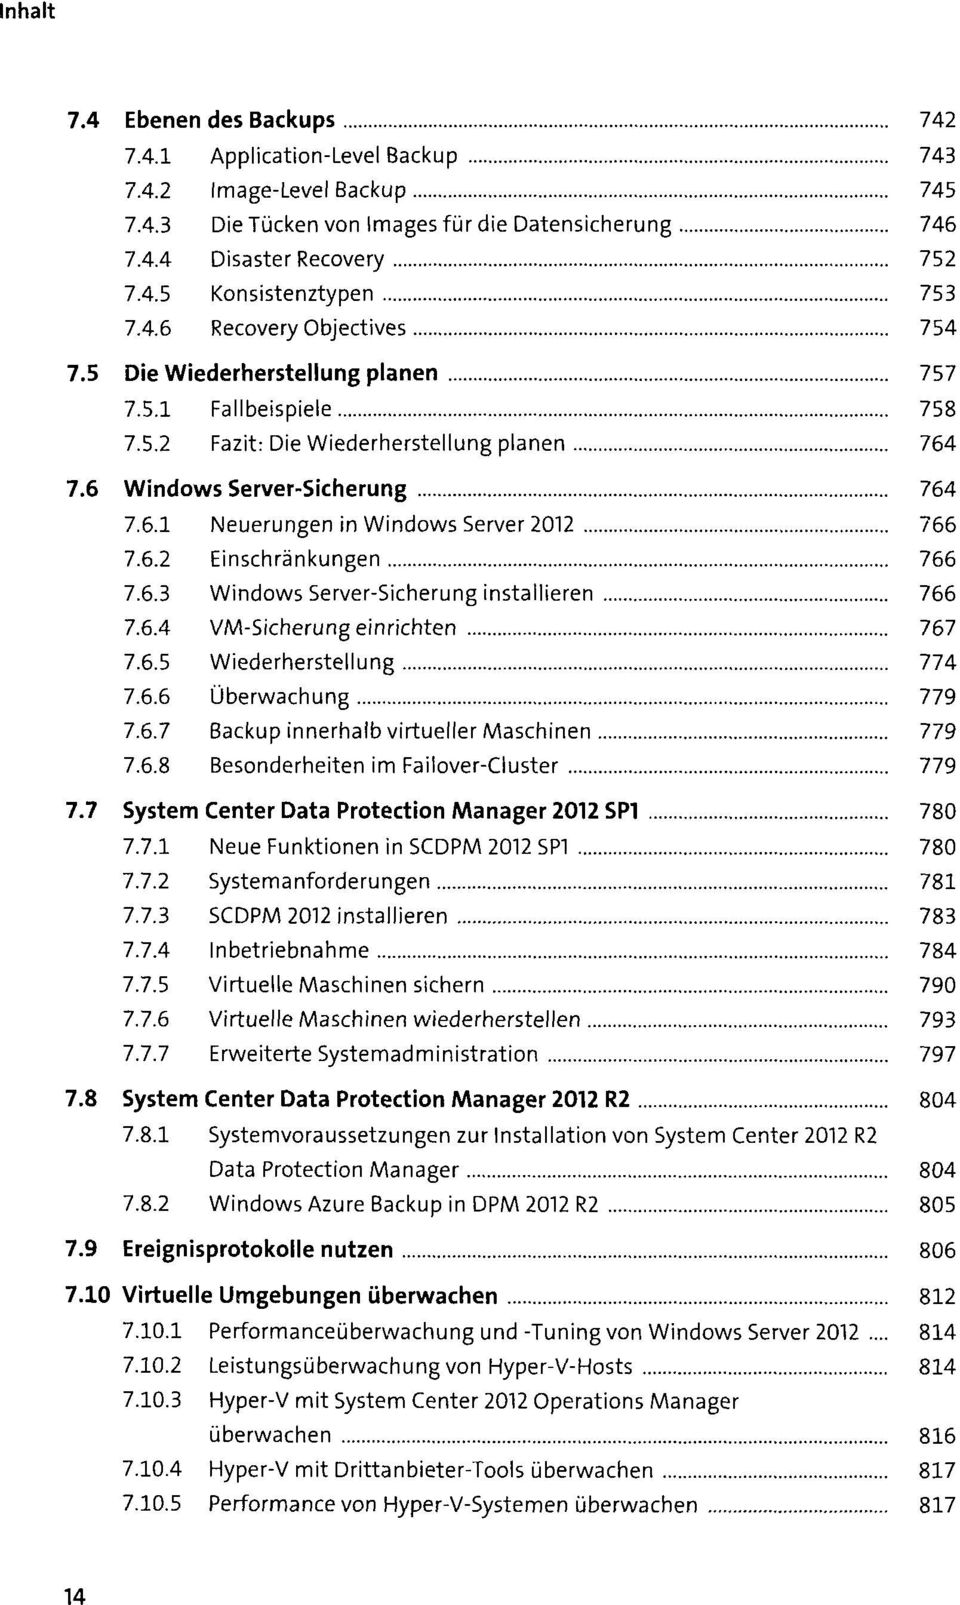 6.2 Einschränkungen 766 7.6.3 Windows Server-Sicherung installieren 766 7.6.4 VM-Sicherung einrichten 767 7.6.5 Wiederherstellung 774 7.6.6 Überwachung 779 7.6.7 Backup innerhalb virtueller Maschinen 779 7.